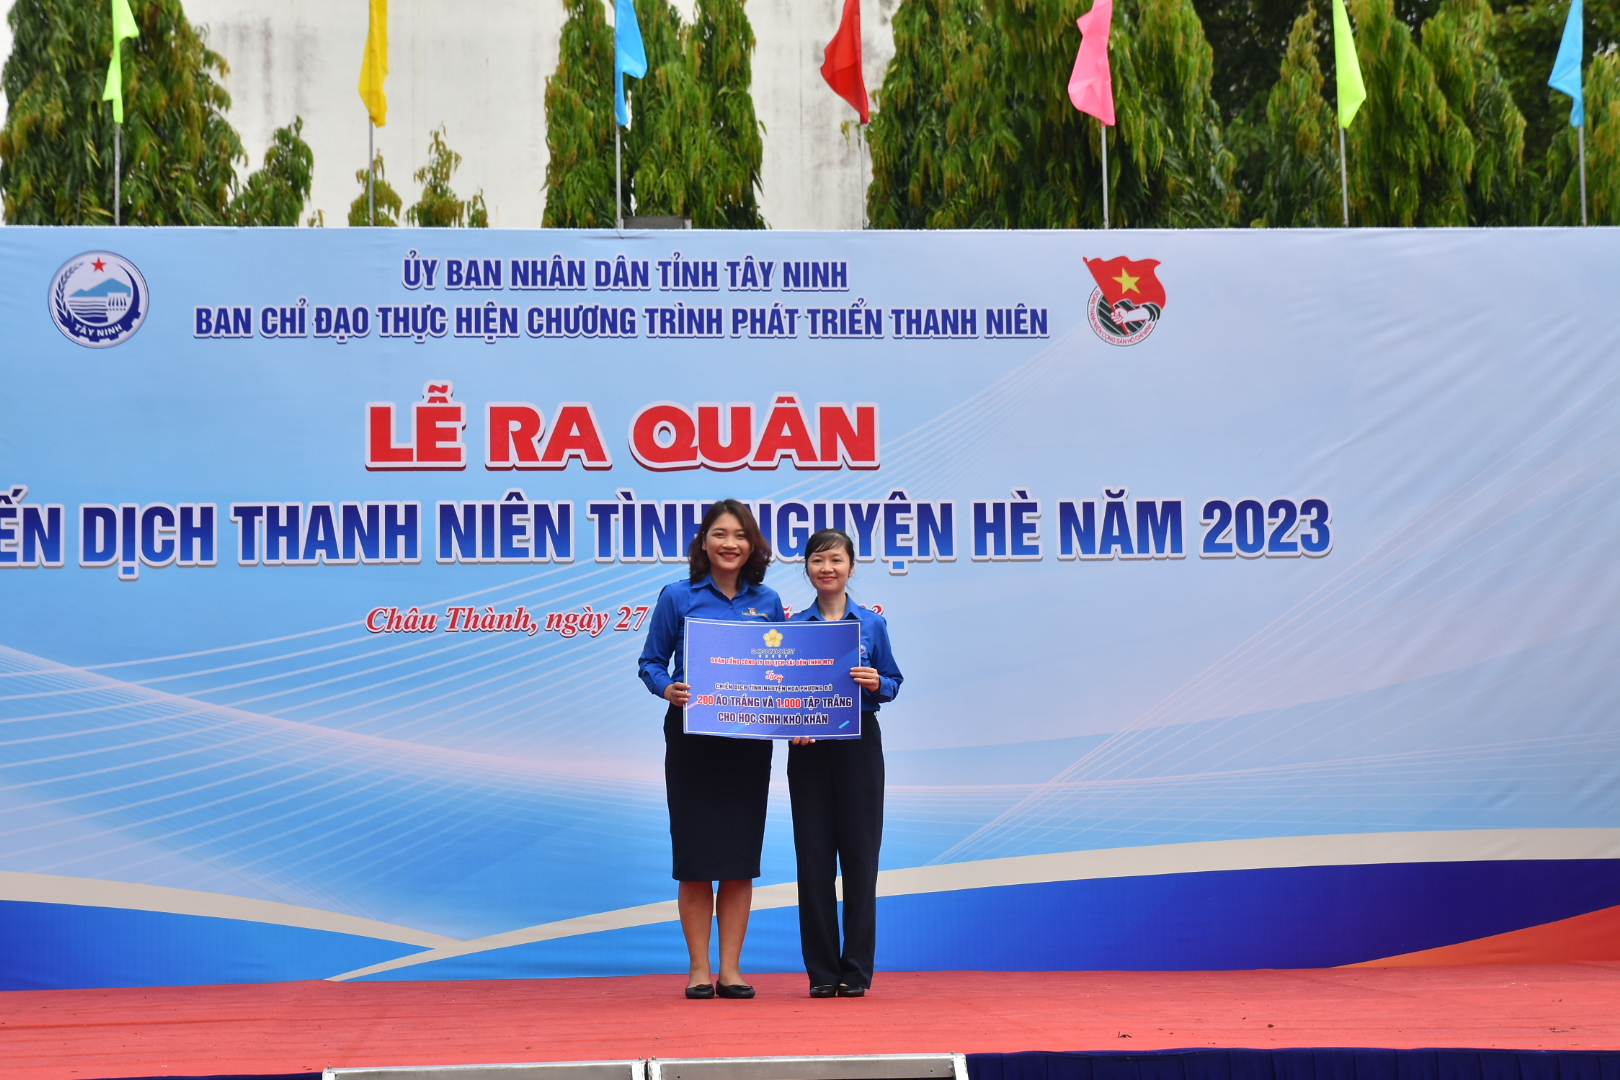 Báo Người Lao Động và Saigontourist Group tham gia chiến dịch thanh niên tình nguyện hè tỉnh Tây Ninh - Ảnh 4.